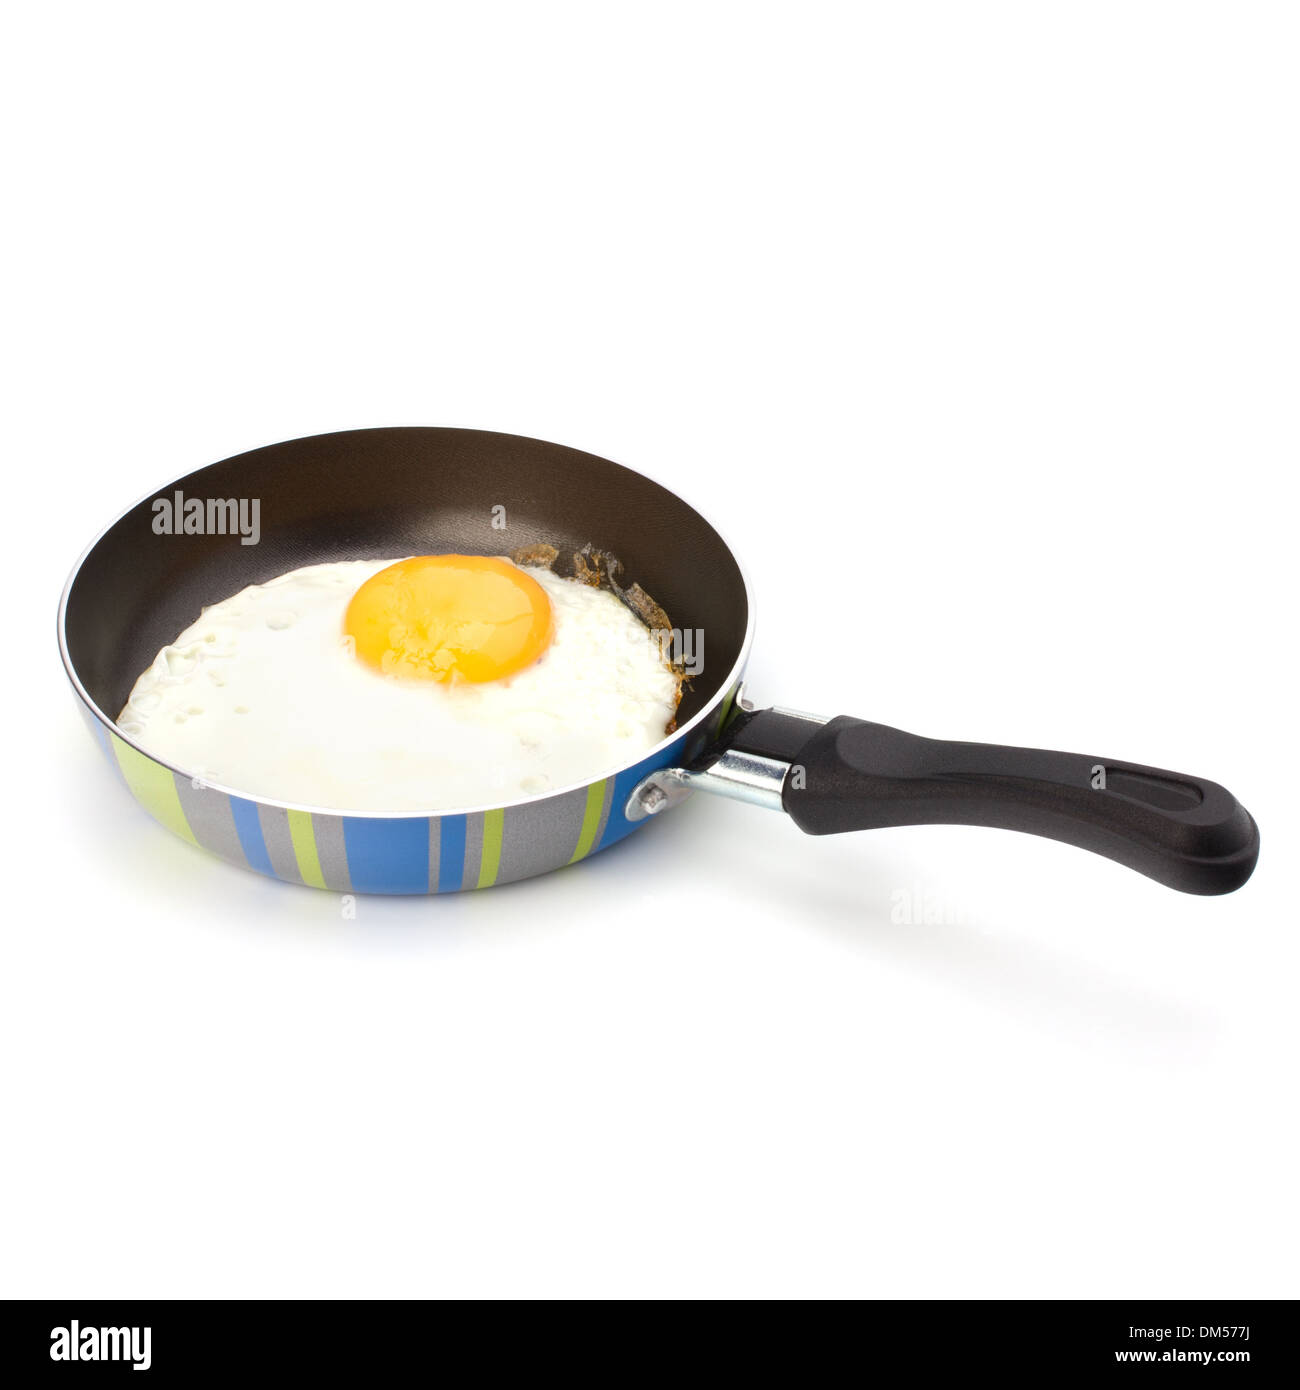 https://c8.alamy.com/comp/DM577J/fried-egg-on-pan-over-white-background-DM577J.jpg